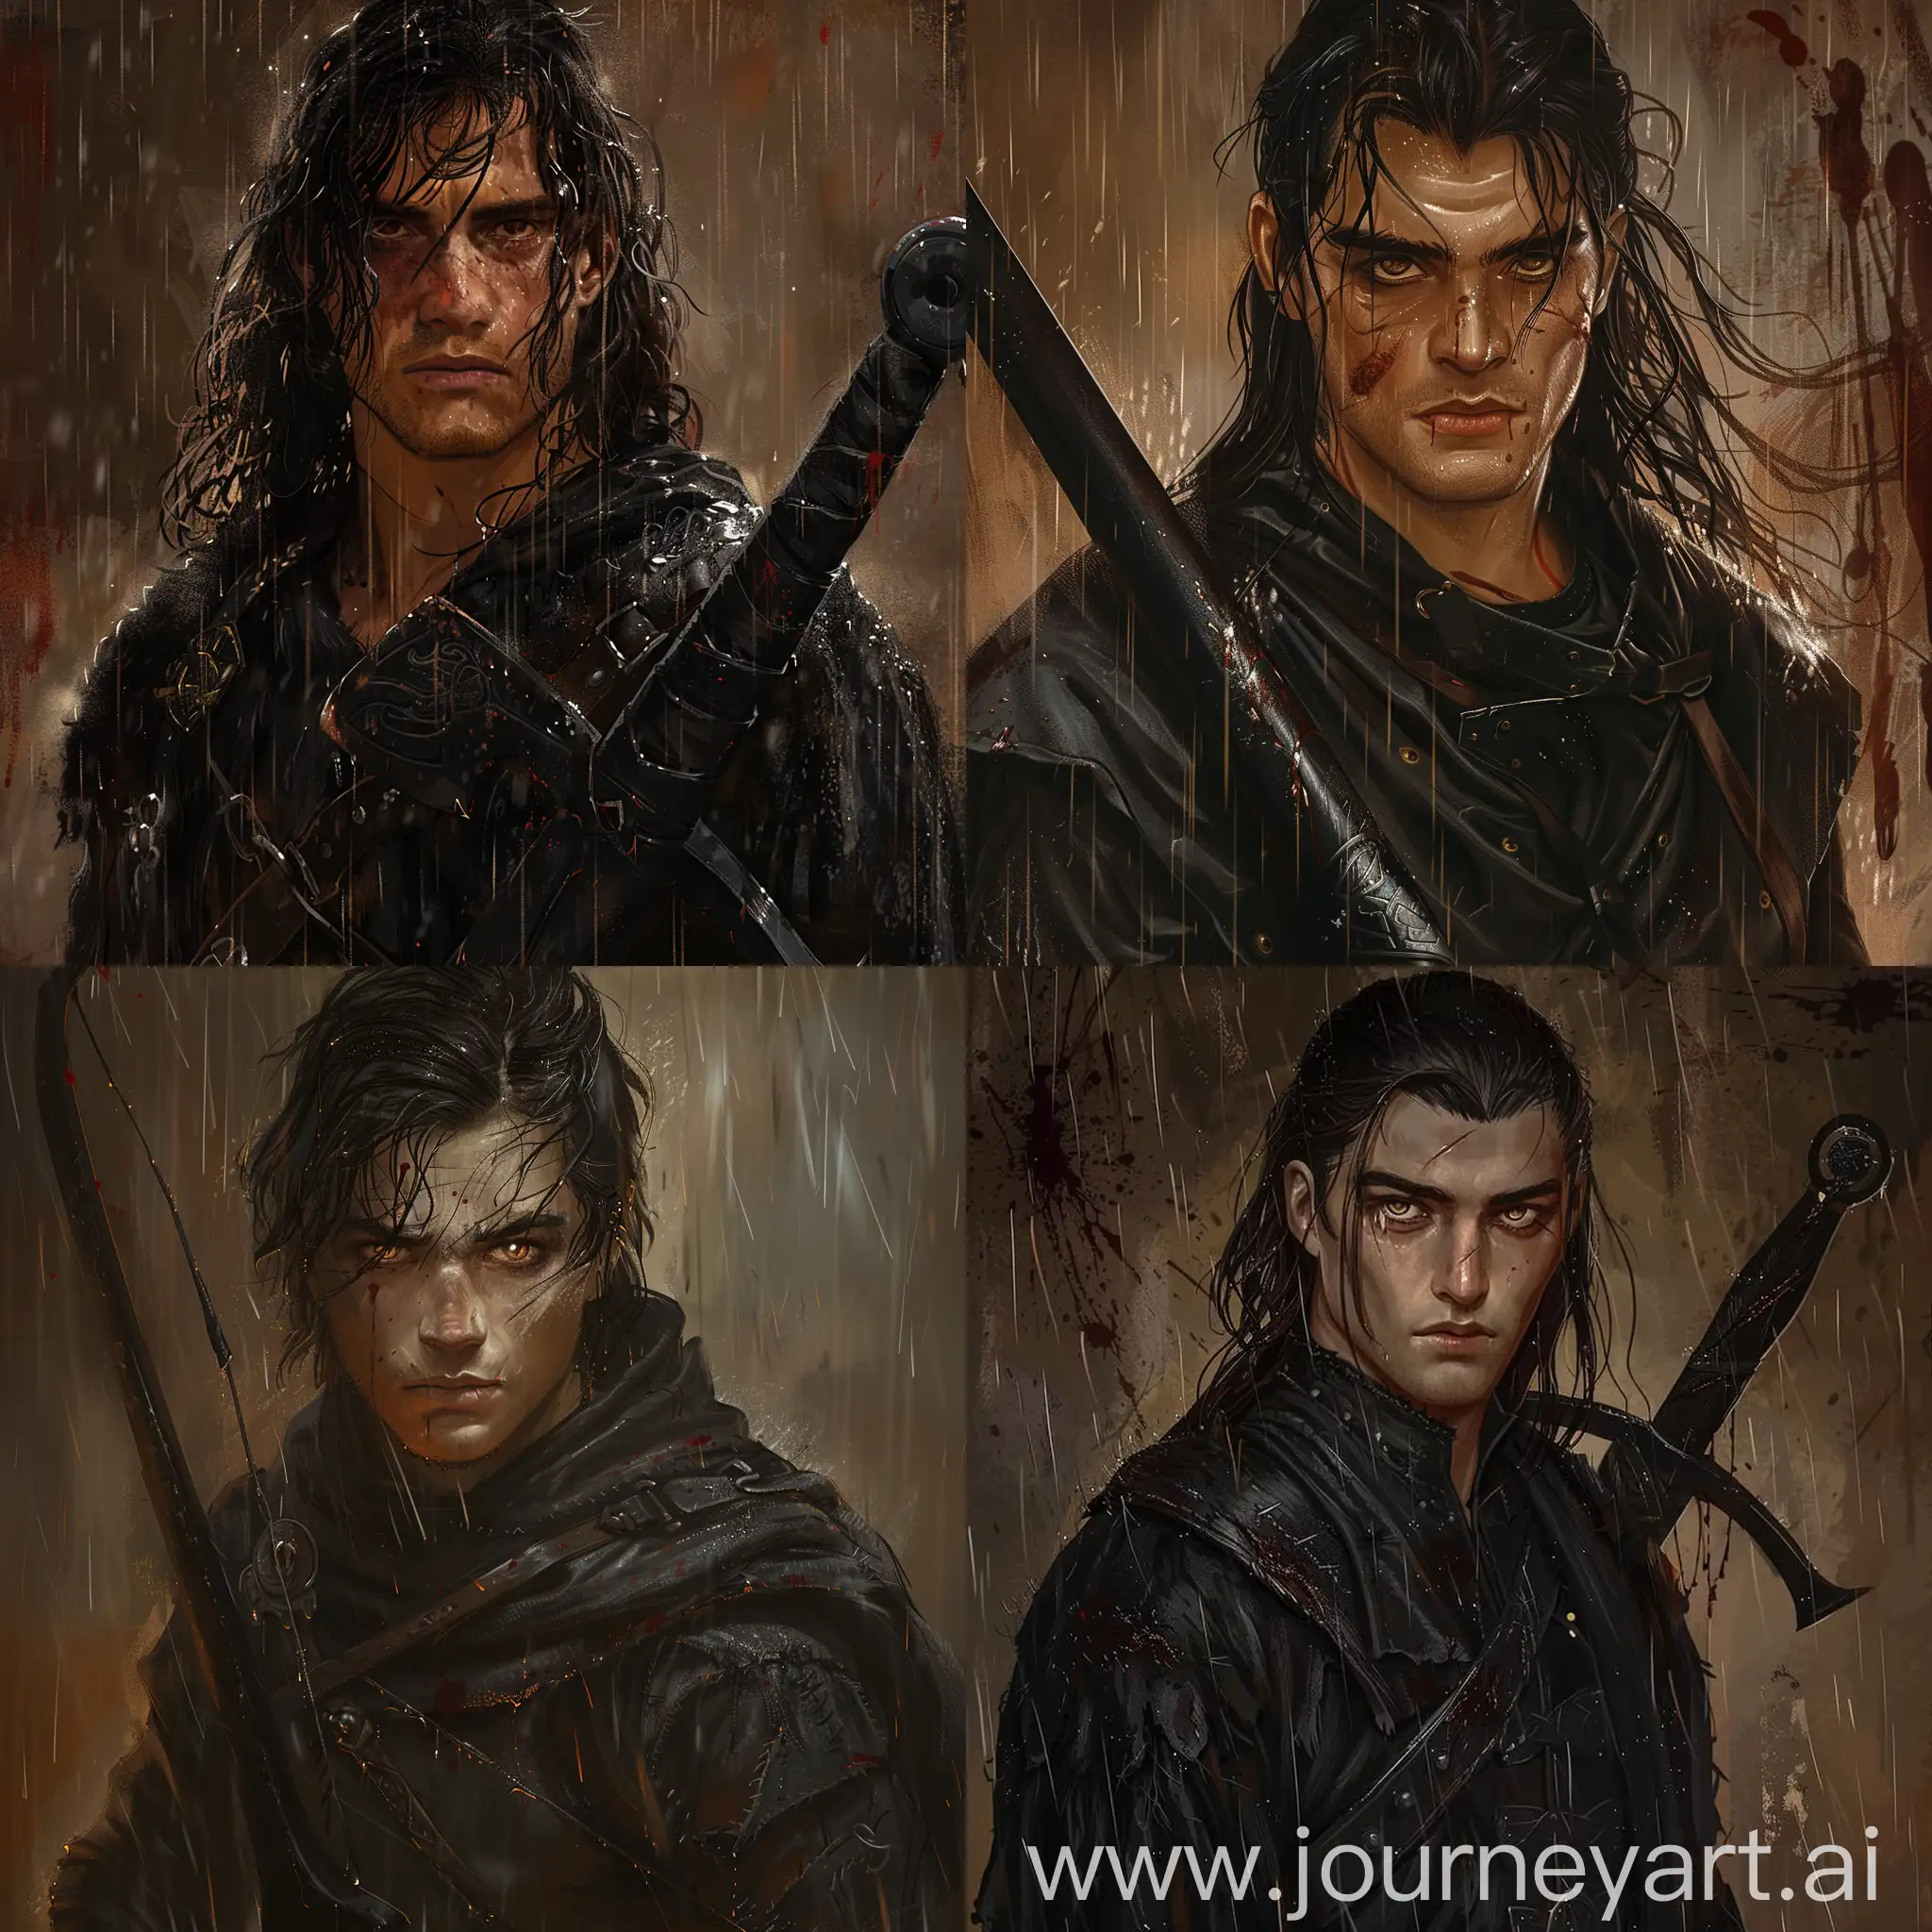 Intense-Viking-Warrior-in-Black-Amidst-a-Dark-Downpour